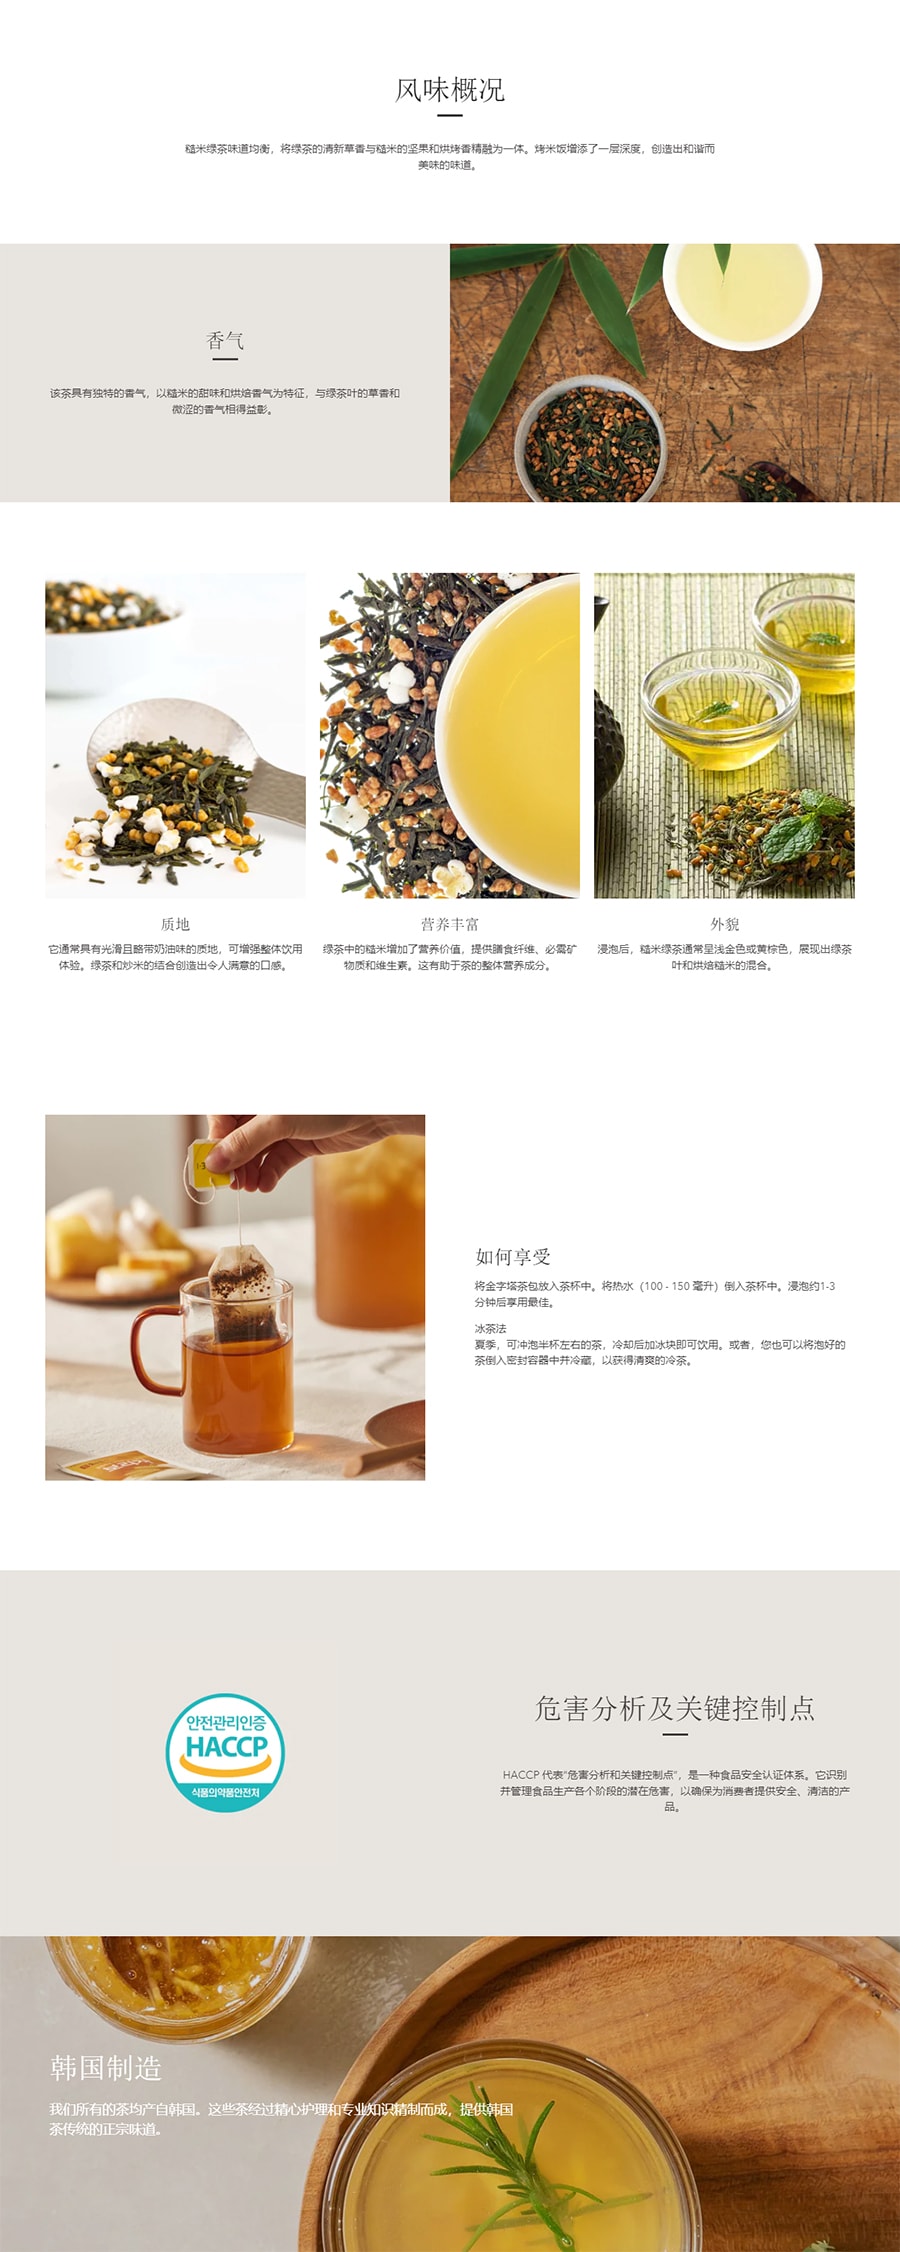 韓國DAMTUH丹特 糙米綠茶 150條入 225g